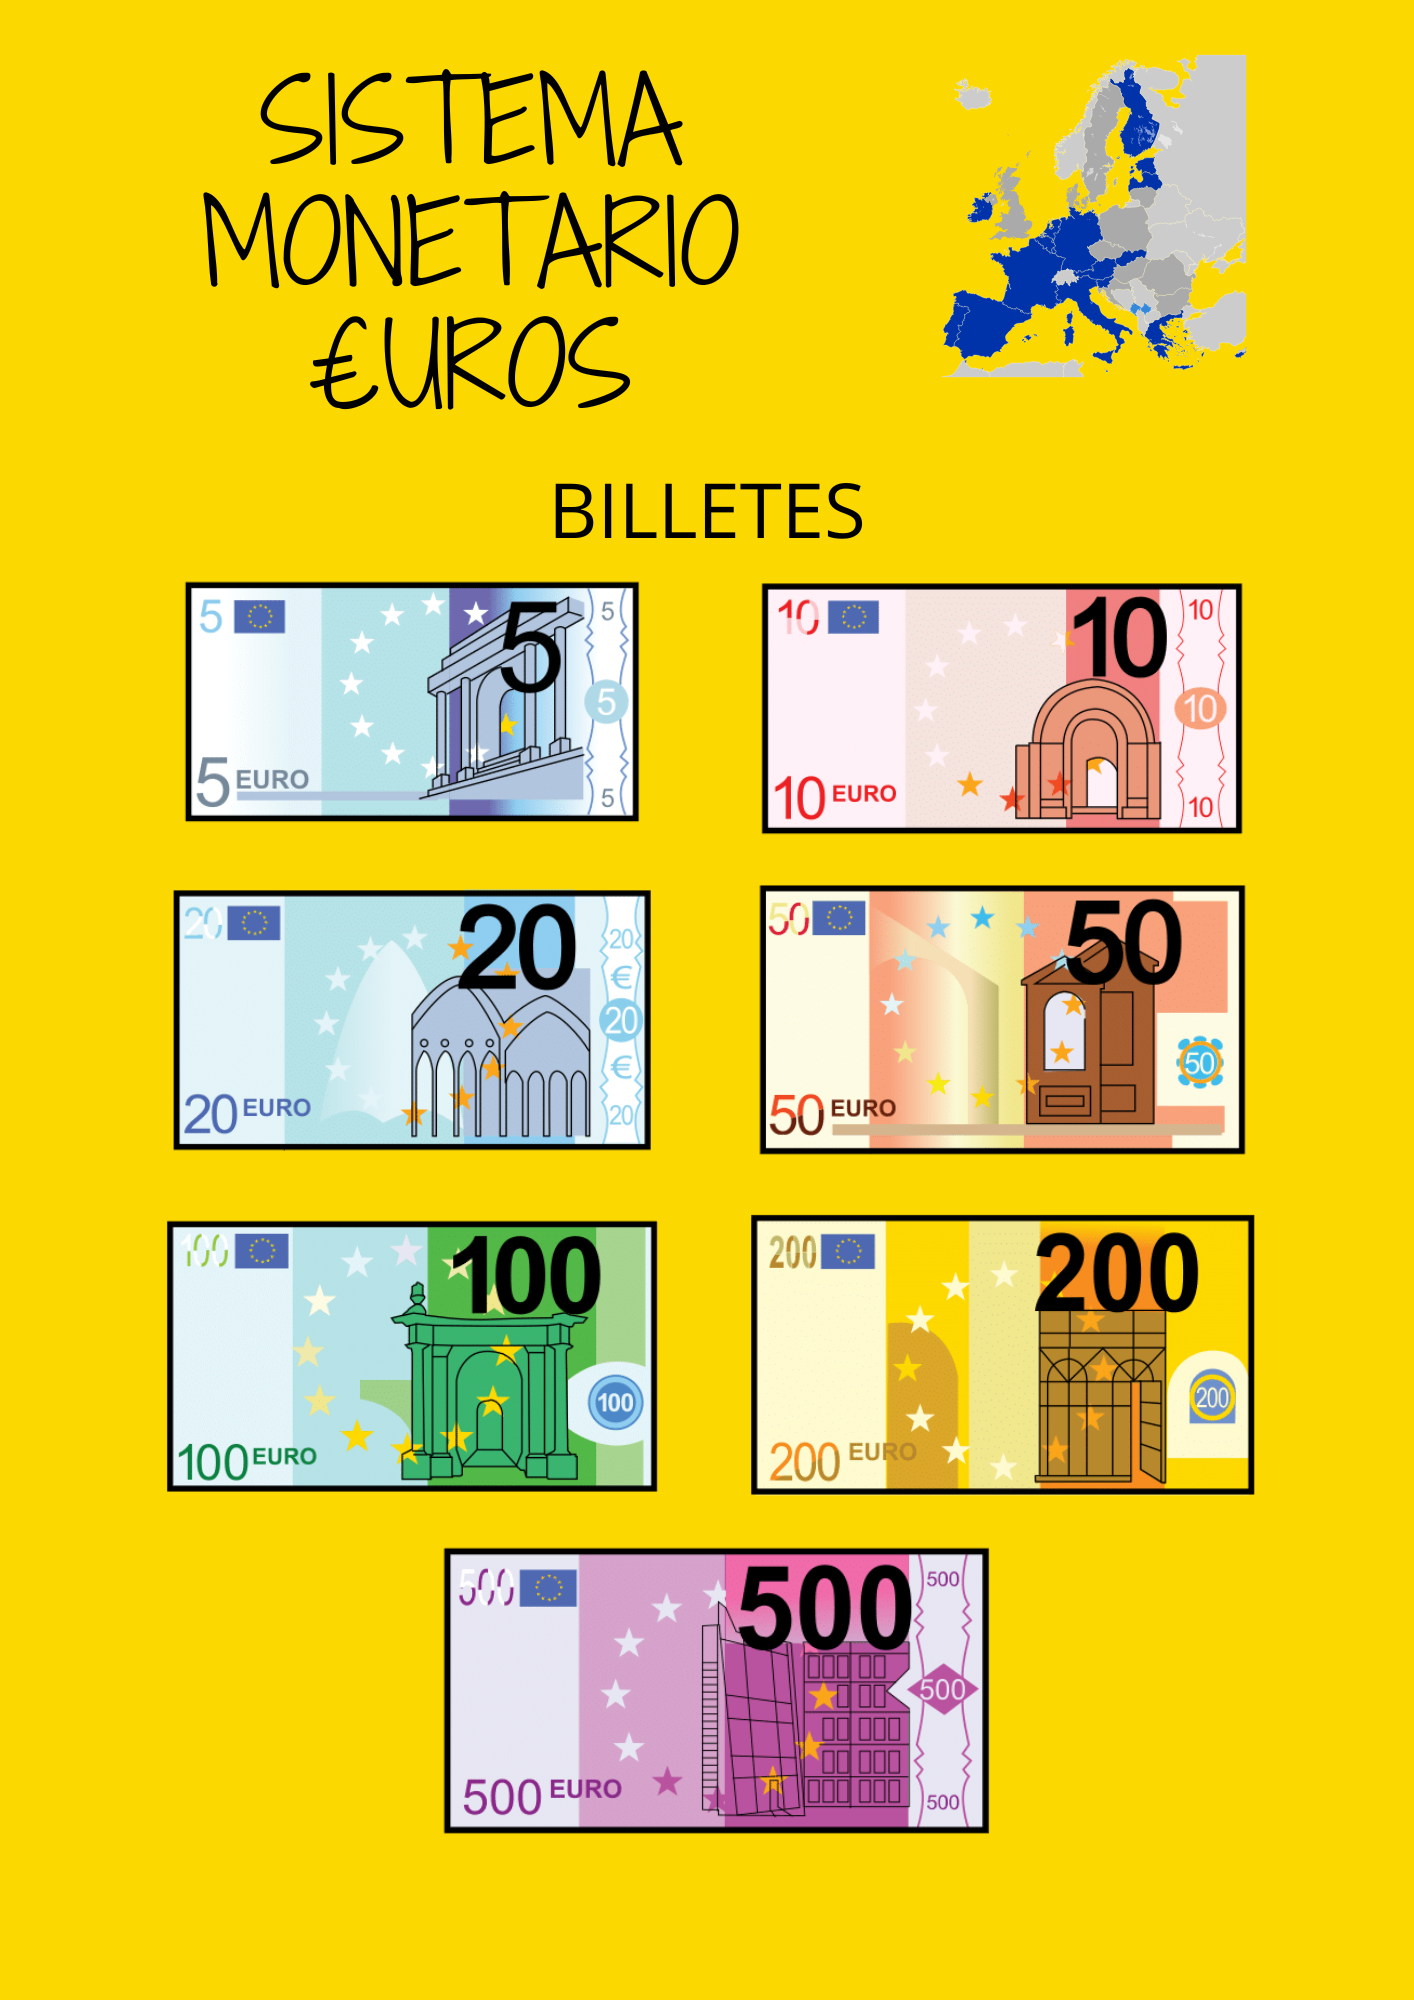 Cartel con los billetes del sistema monetario europeo.